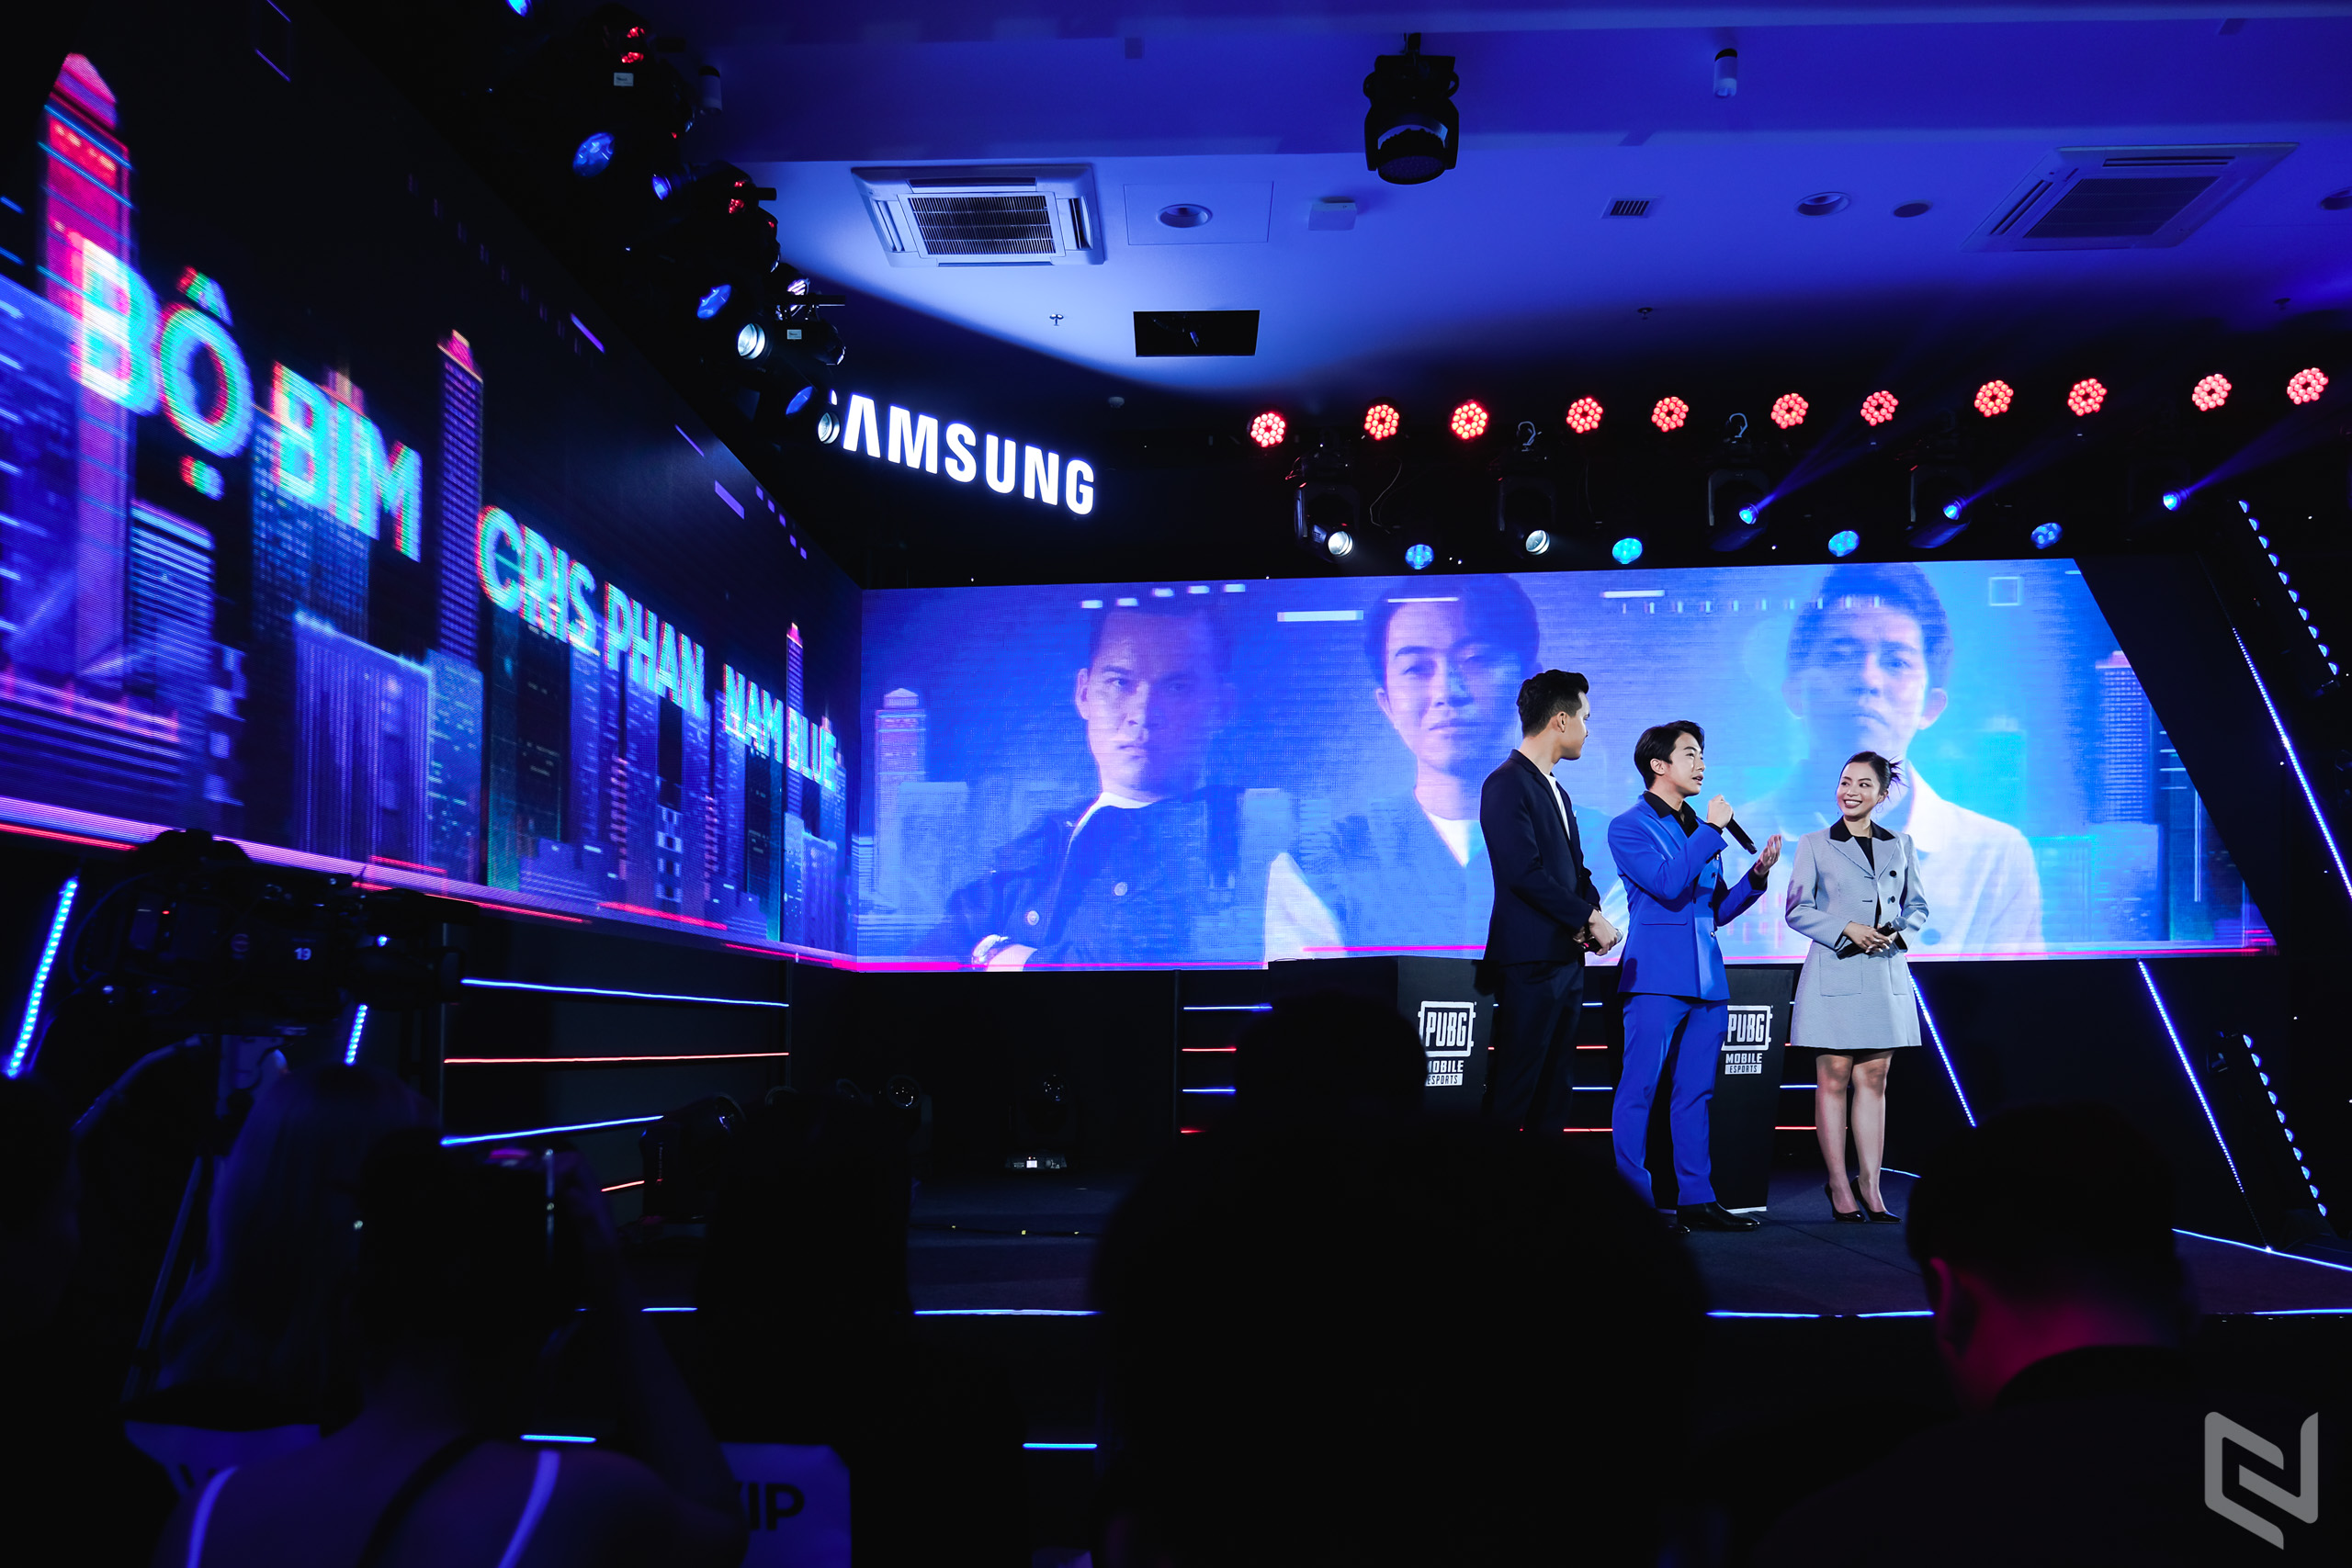 Bộ ba Galaxy A Series dành cho Gen Z chính thức lên kệ tại Việt Nam